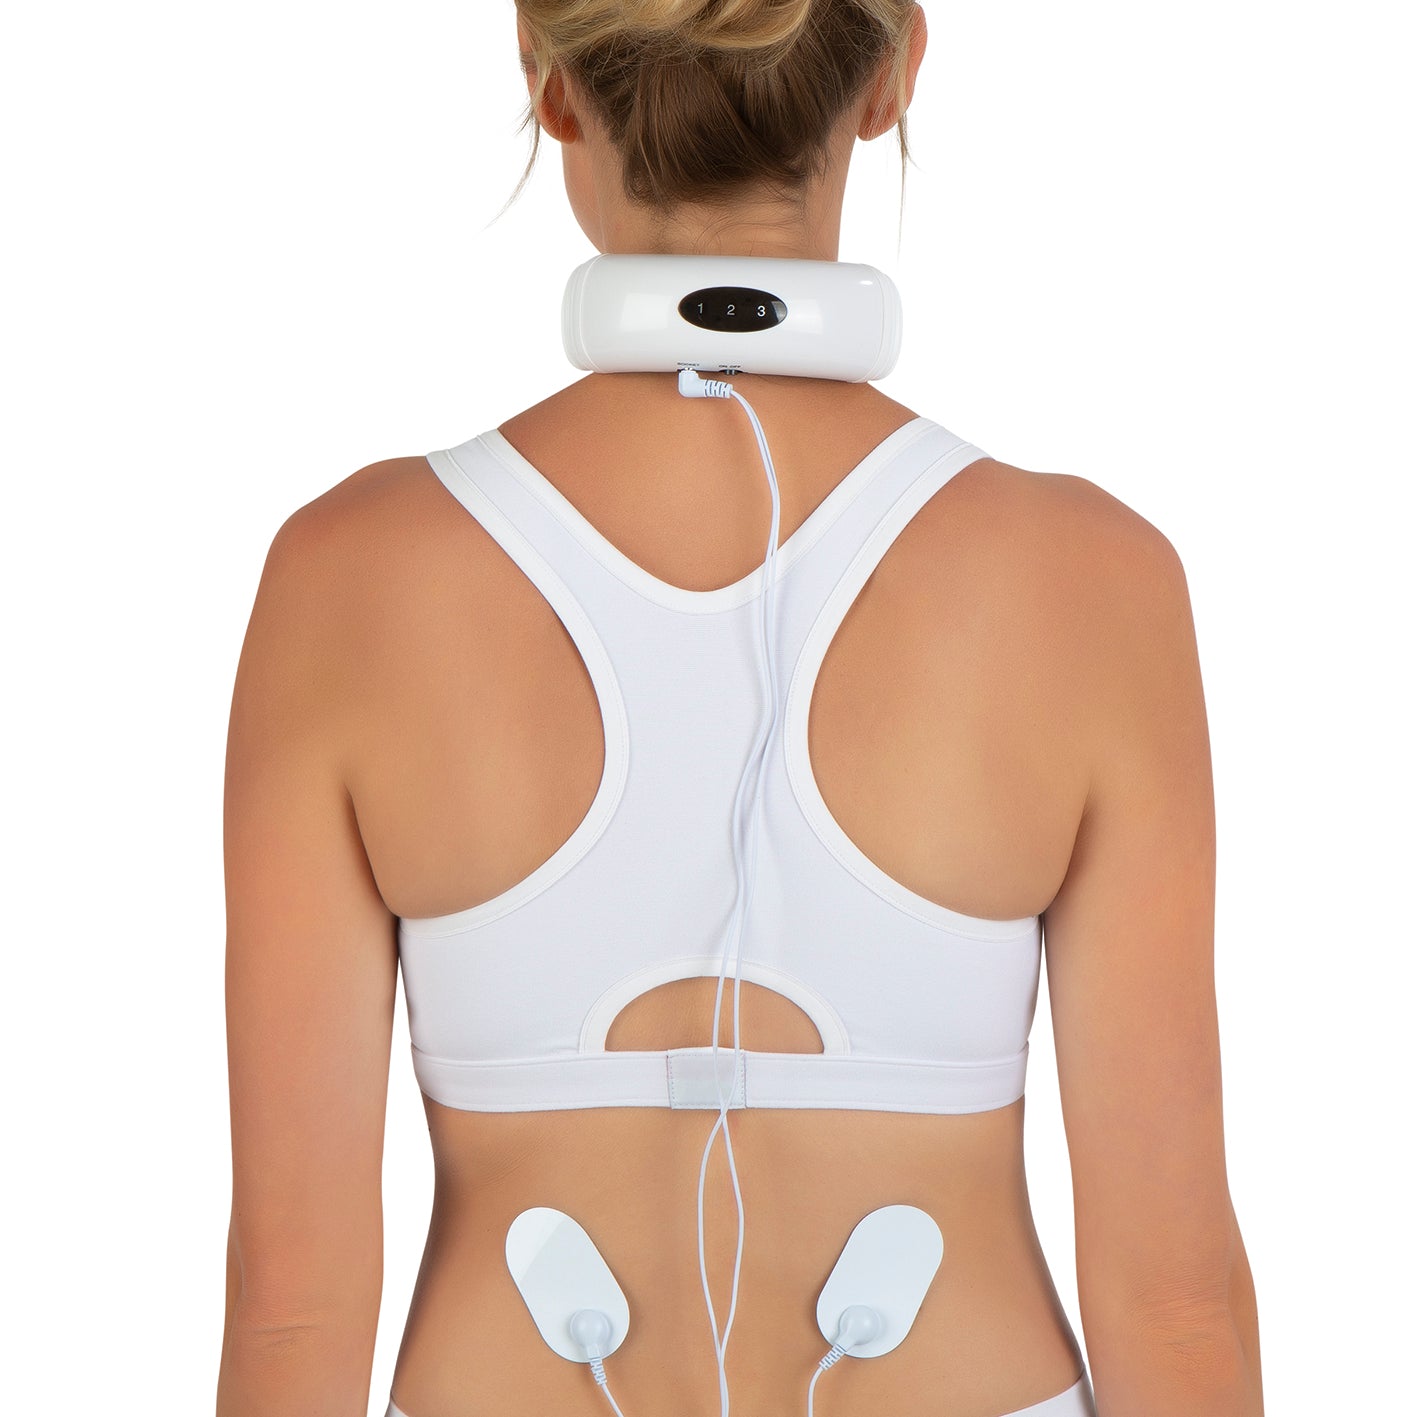 Nacken-Massagegerät EMS - 16 Intensitätsstufen - weiß/schwarz